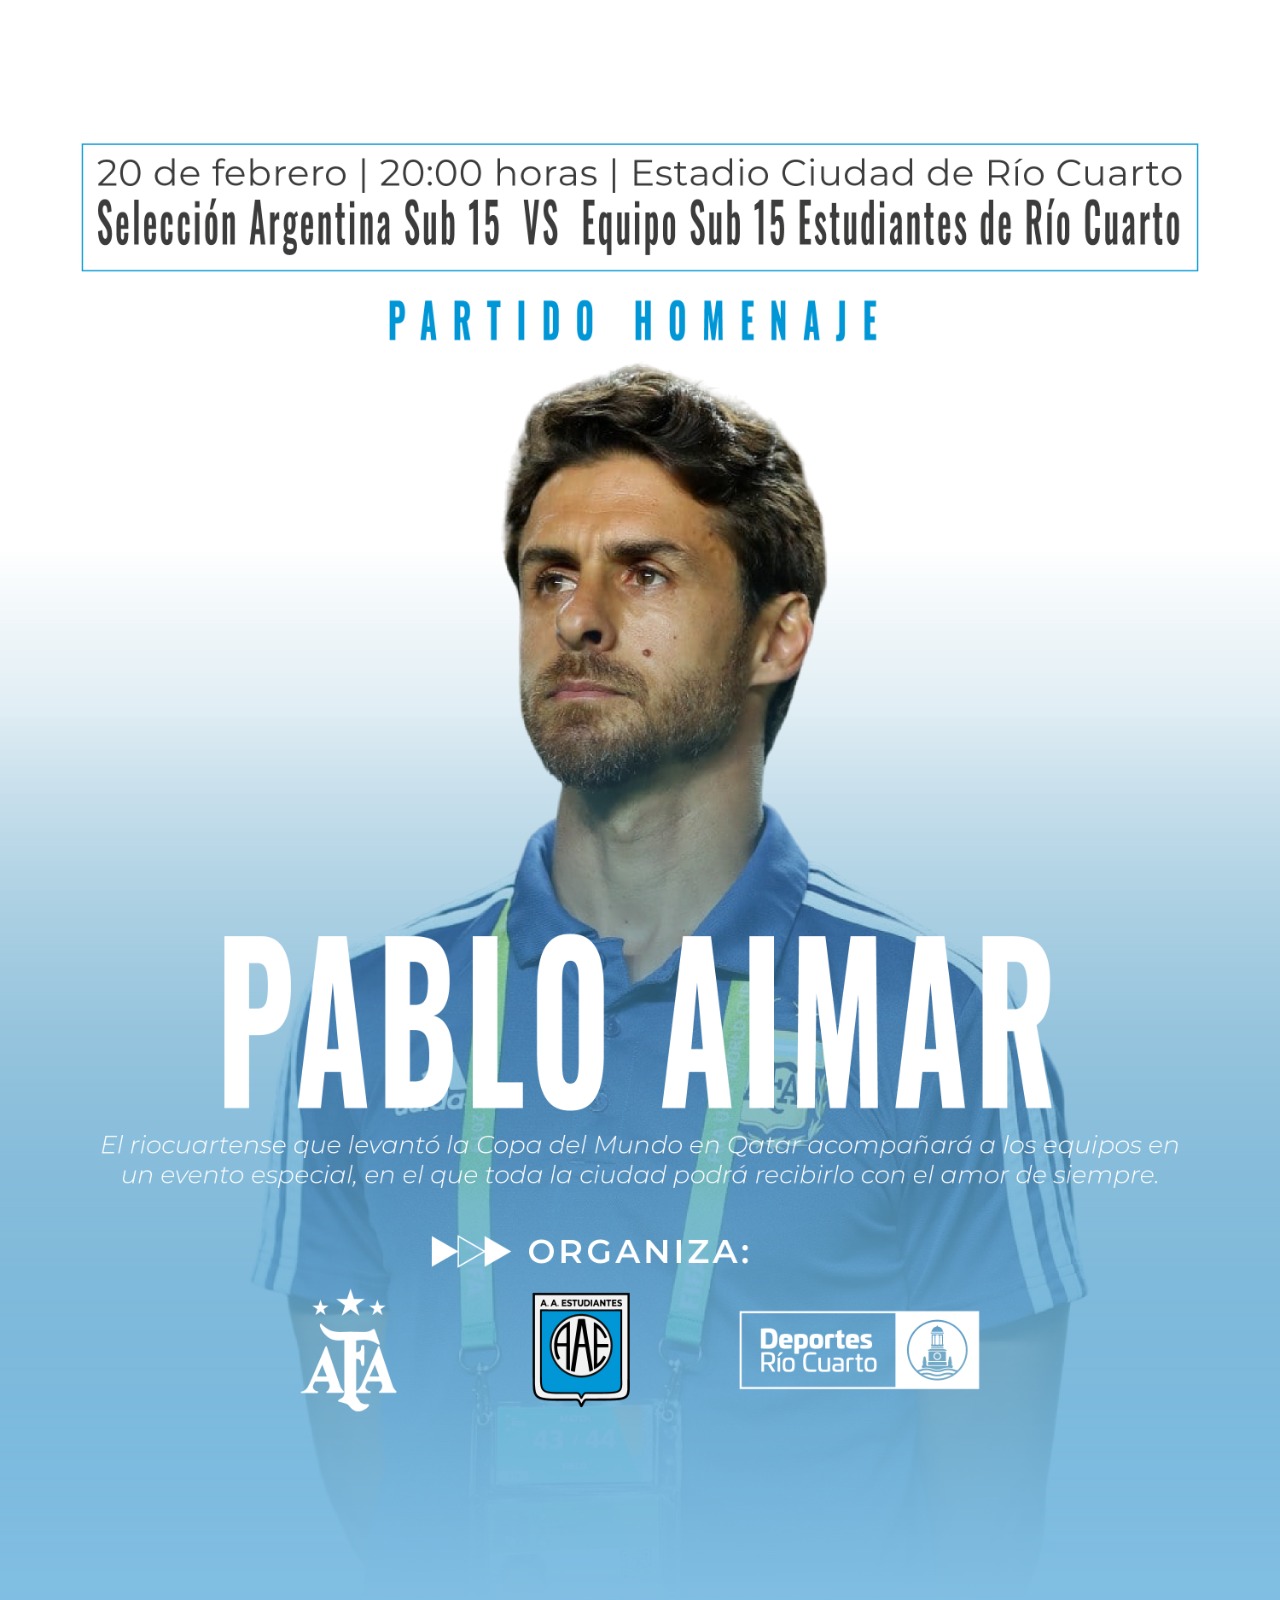 Pablo Aimar tendrá su homenaje en Río Cuarto | Canal Showsport